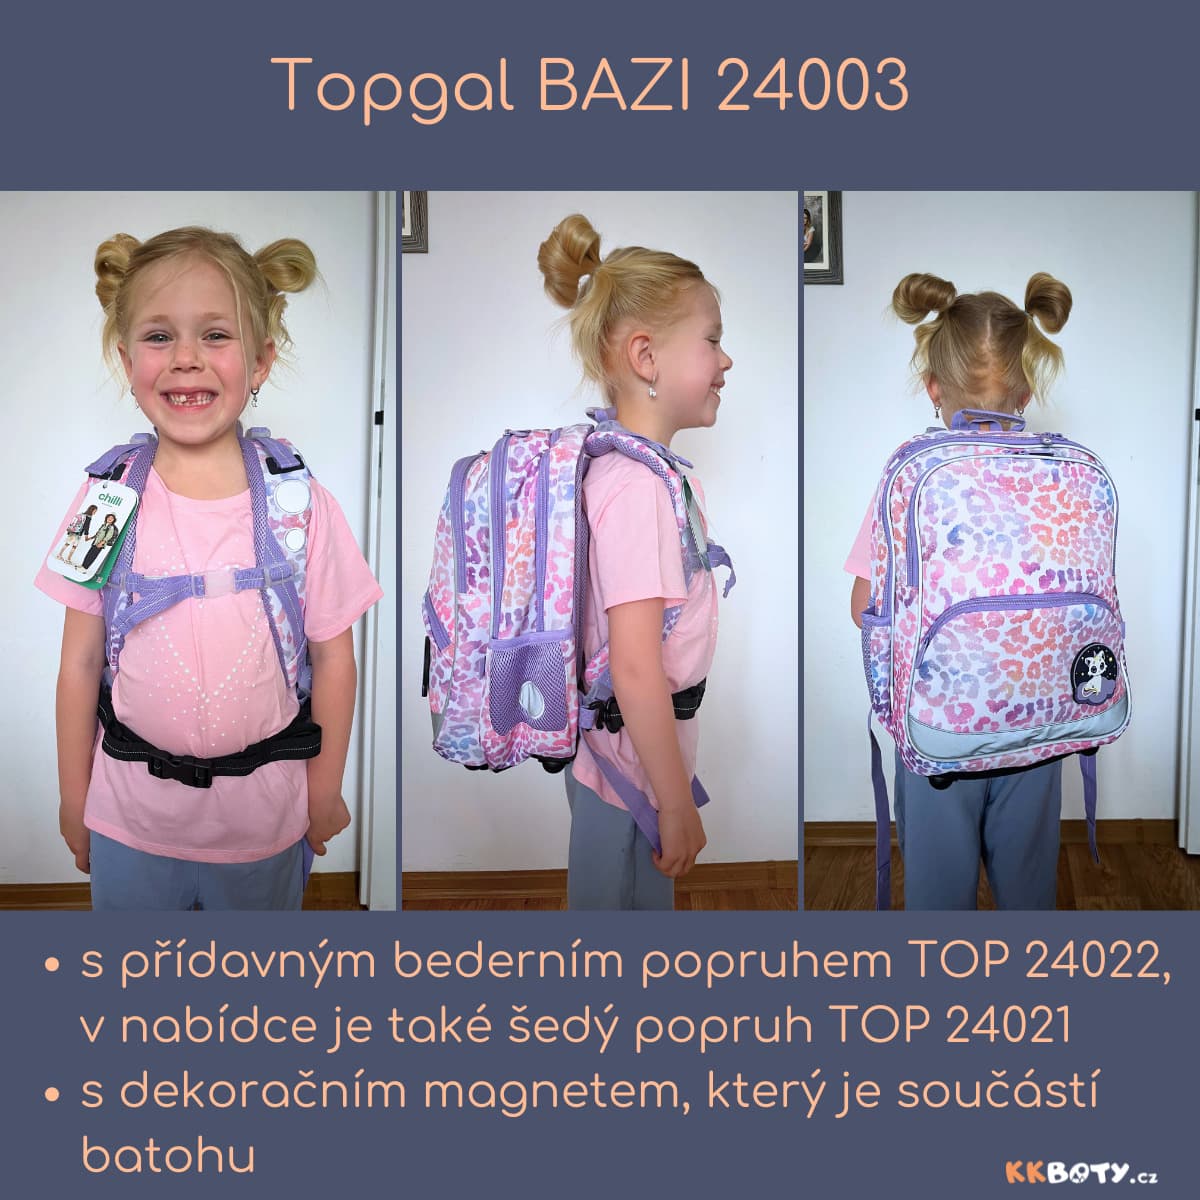 Topgal BAZI a přídavná bederní popruh TOP 24022